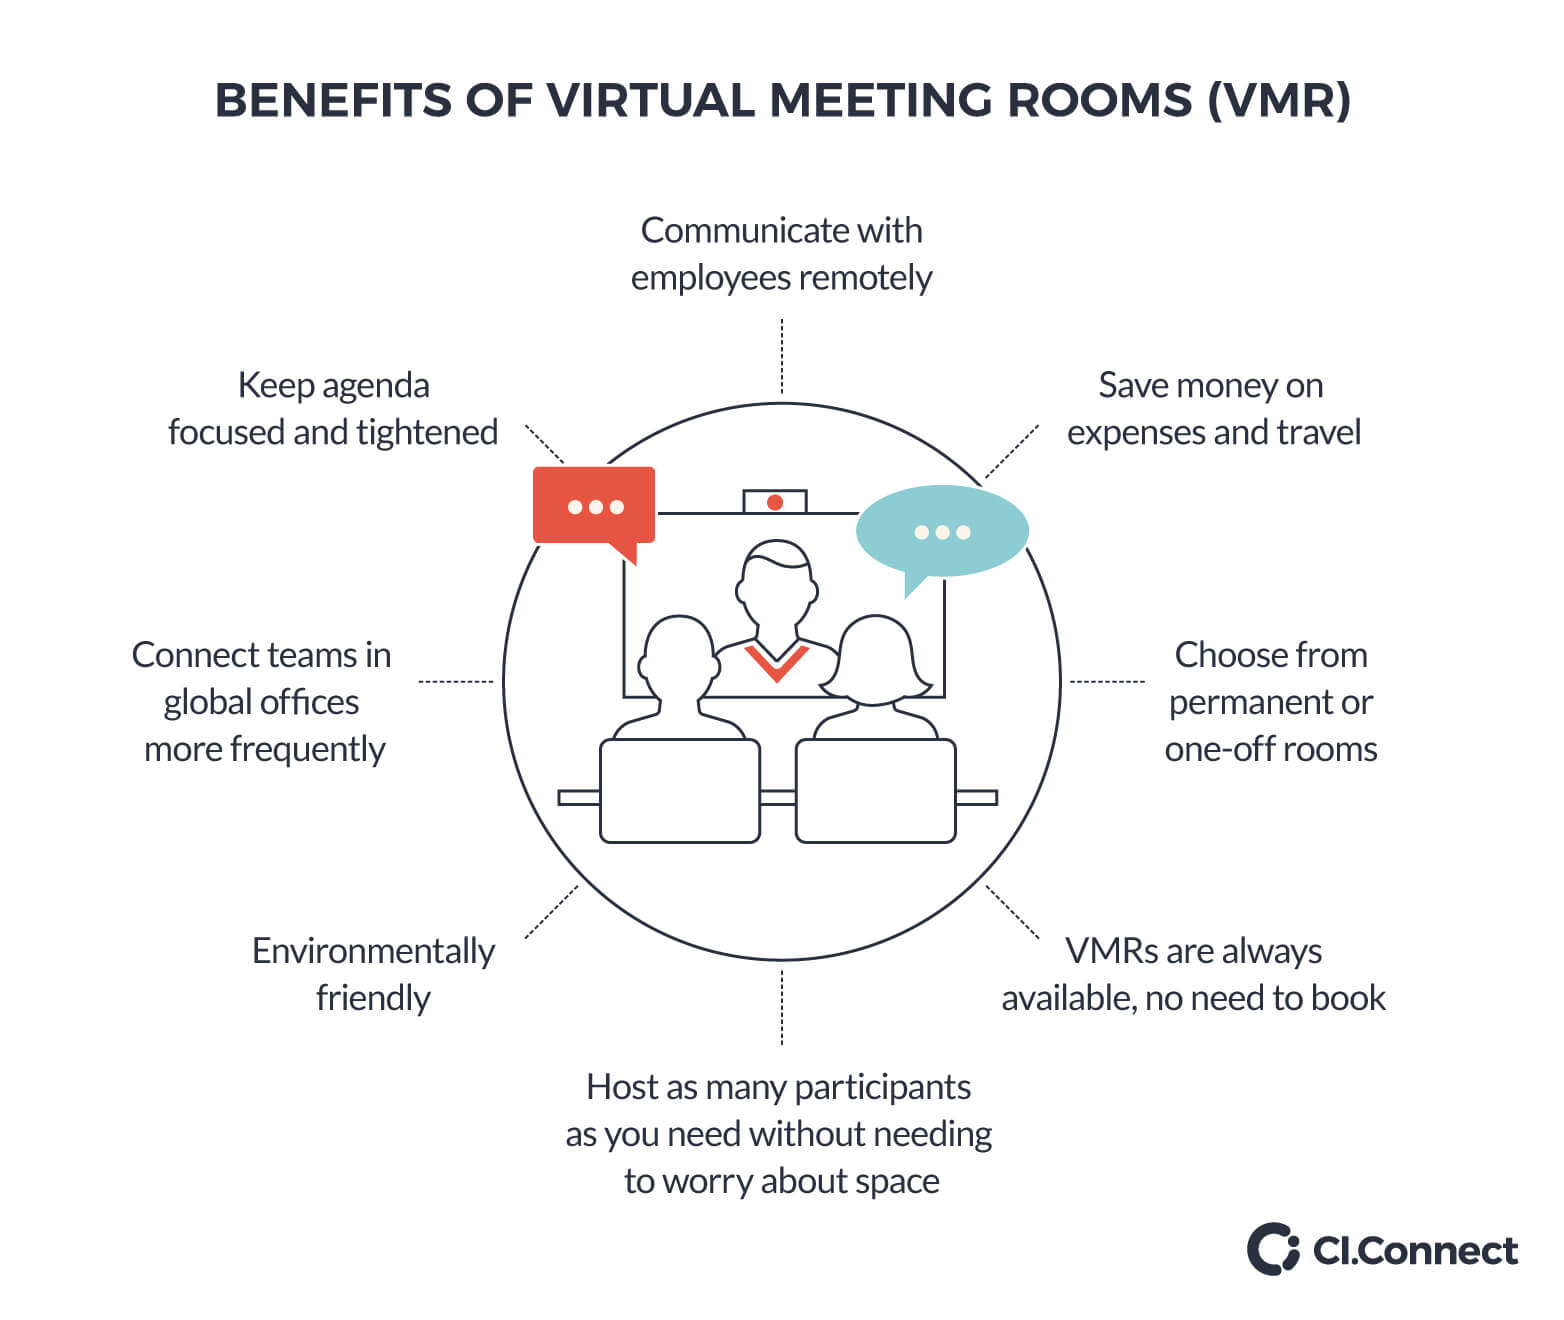 Benefits of virtual meeting rooms (VMR)